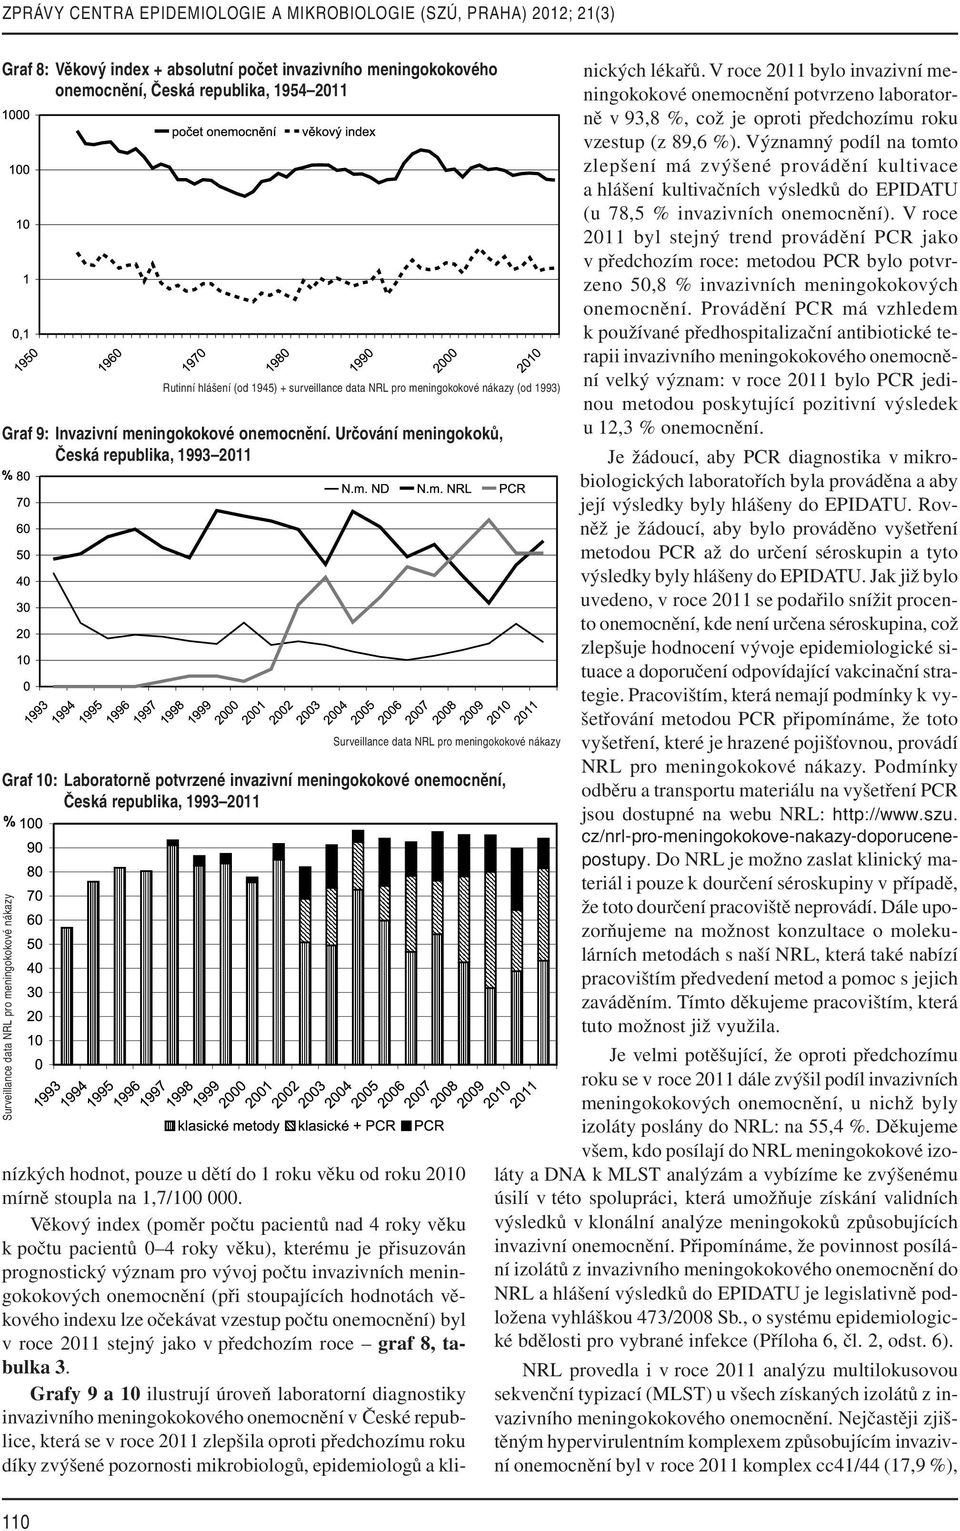 Určování meningokoků, Graf 10: Laboratorně potvrzené invazivní meningokokové onemocnění, Rutinní hlášení (od 1945) + surveillance data NRL pro meningokokové nákazy (od 1993) nízkých hodnot, pouze u